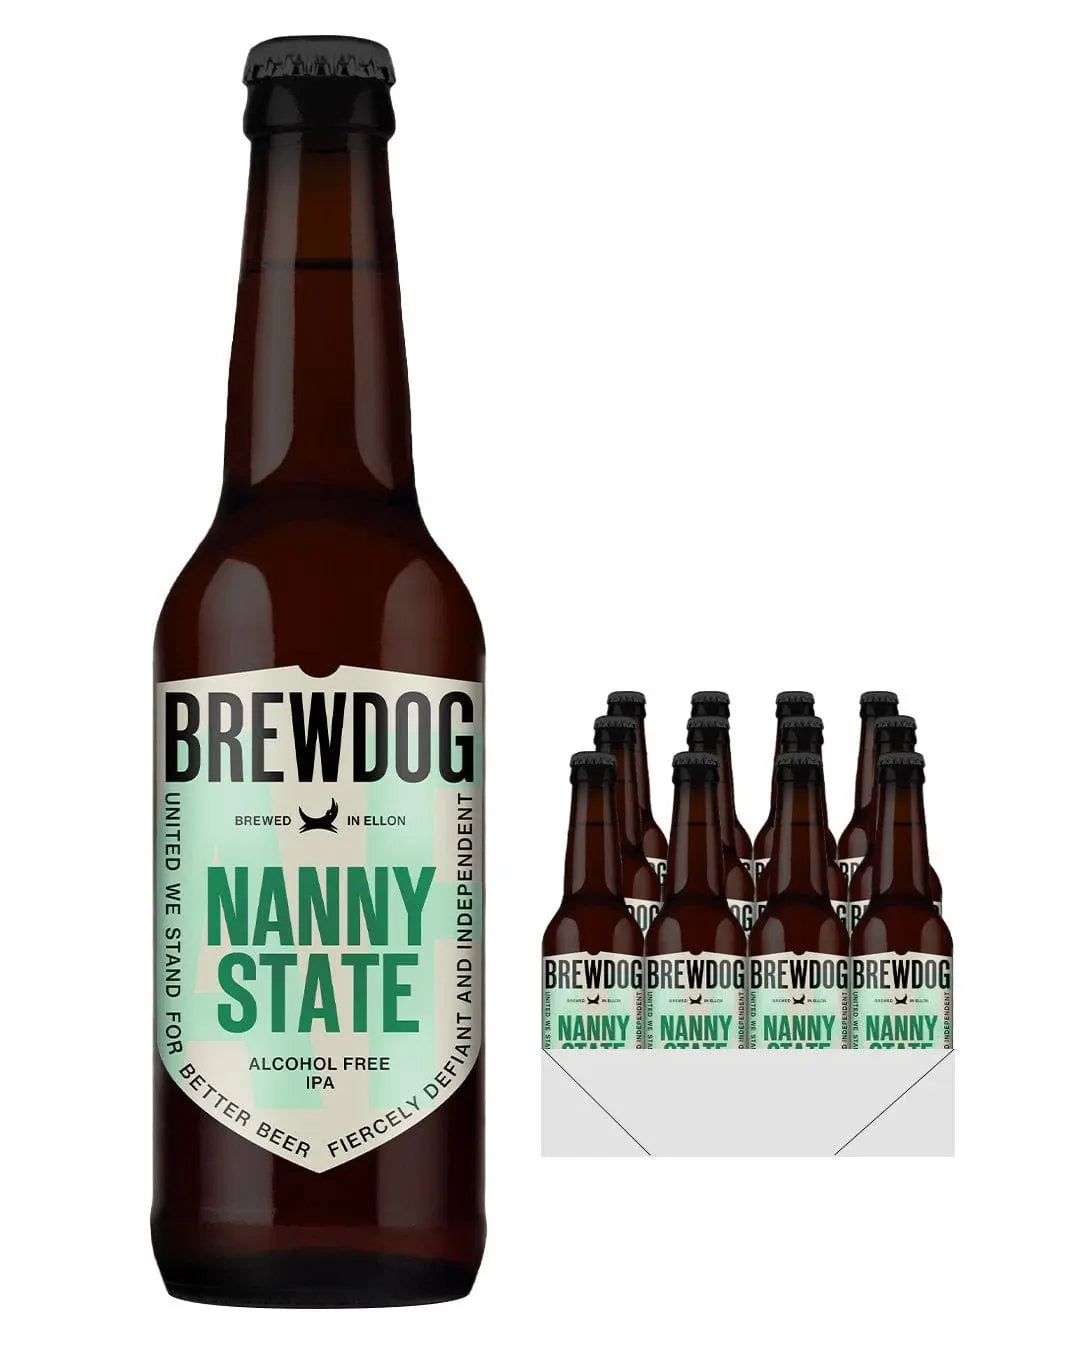 BrewDog Nanny State Beer Bottle Multipack, 12 x 330 ml Beer